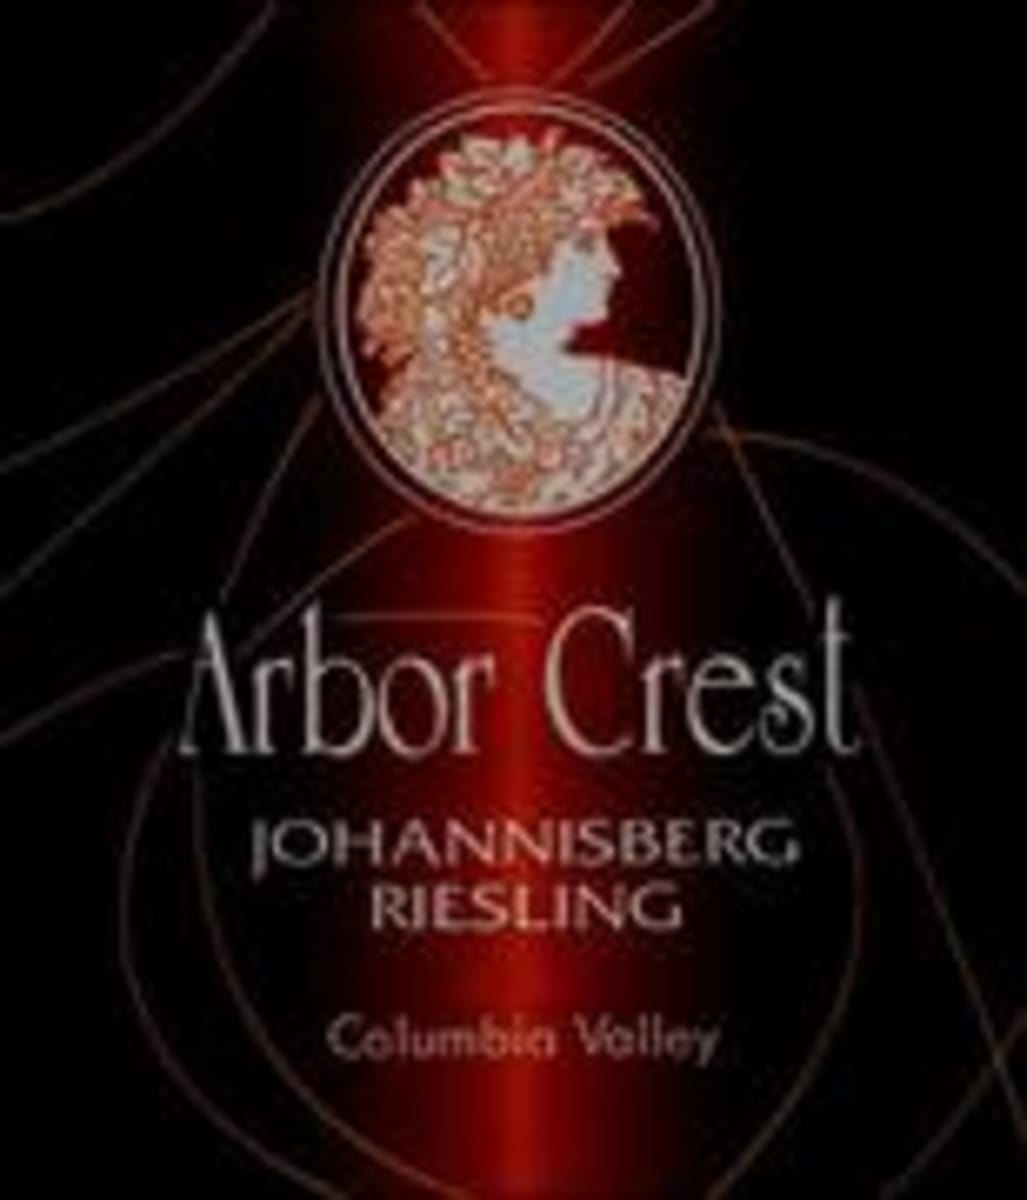 Arbor Crest Johannisburg Riesling 1997 Front Label